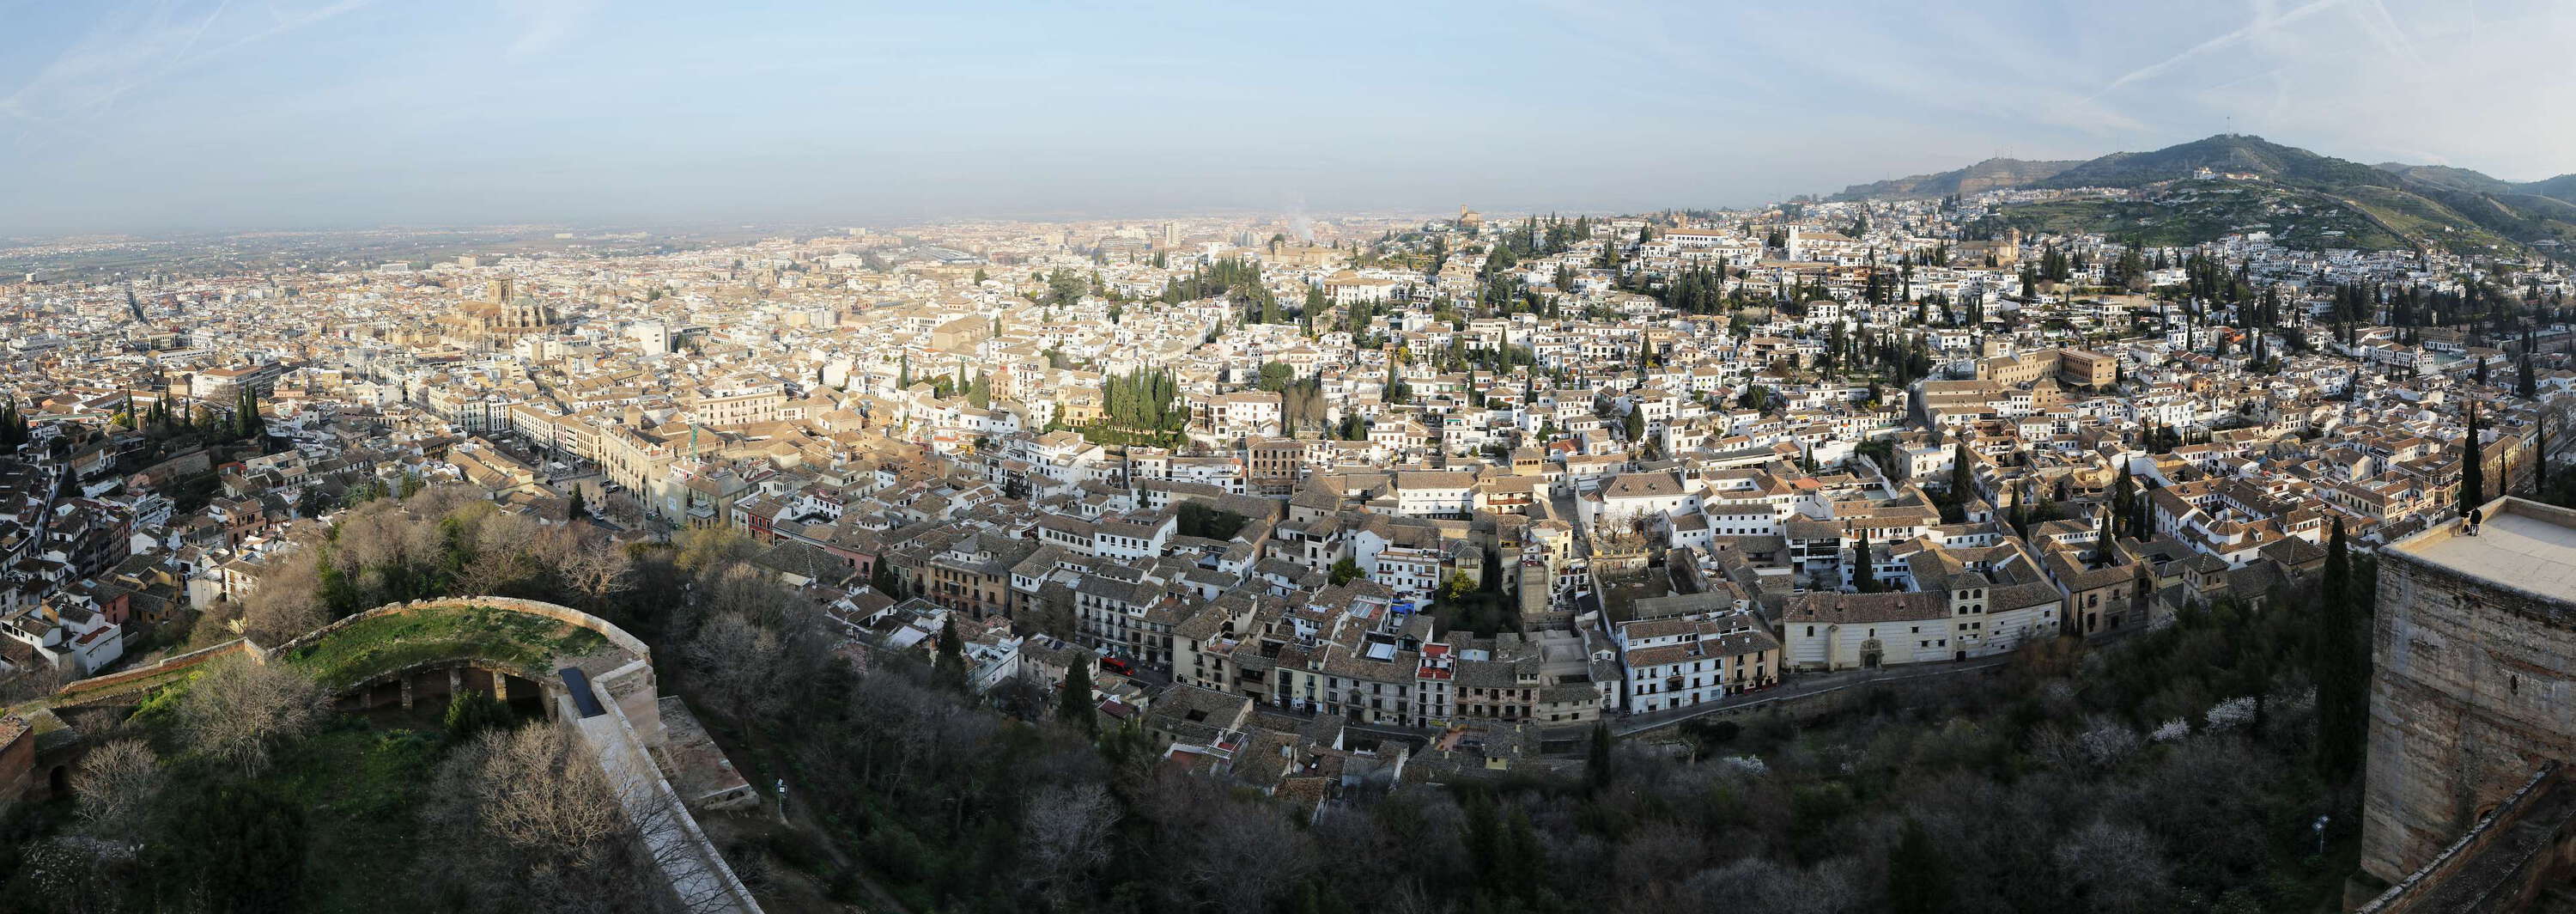 Granada with Albaicín